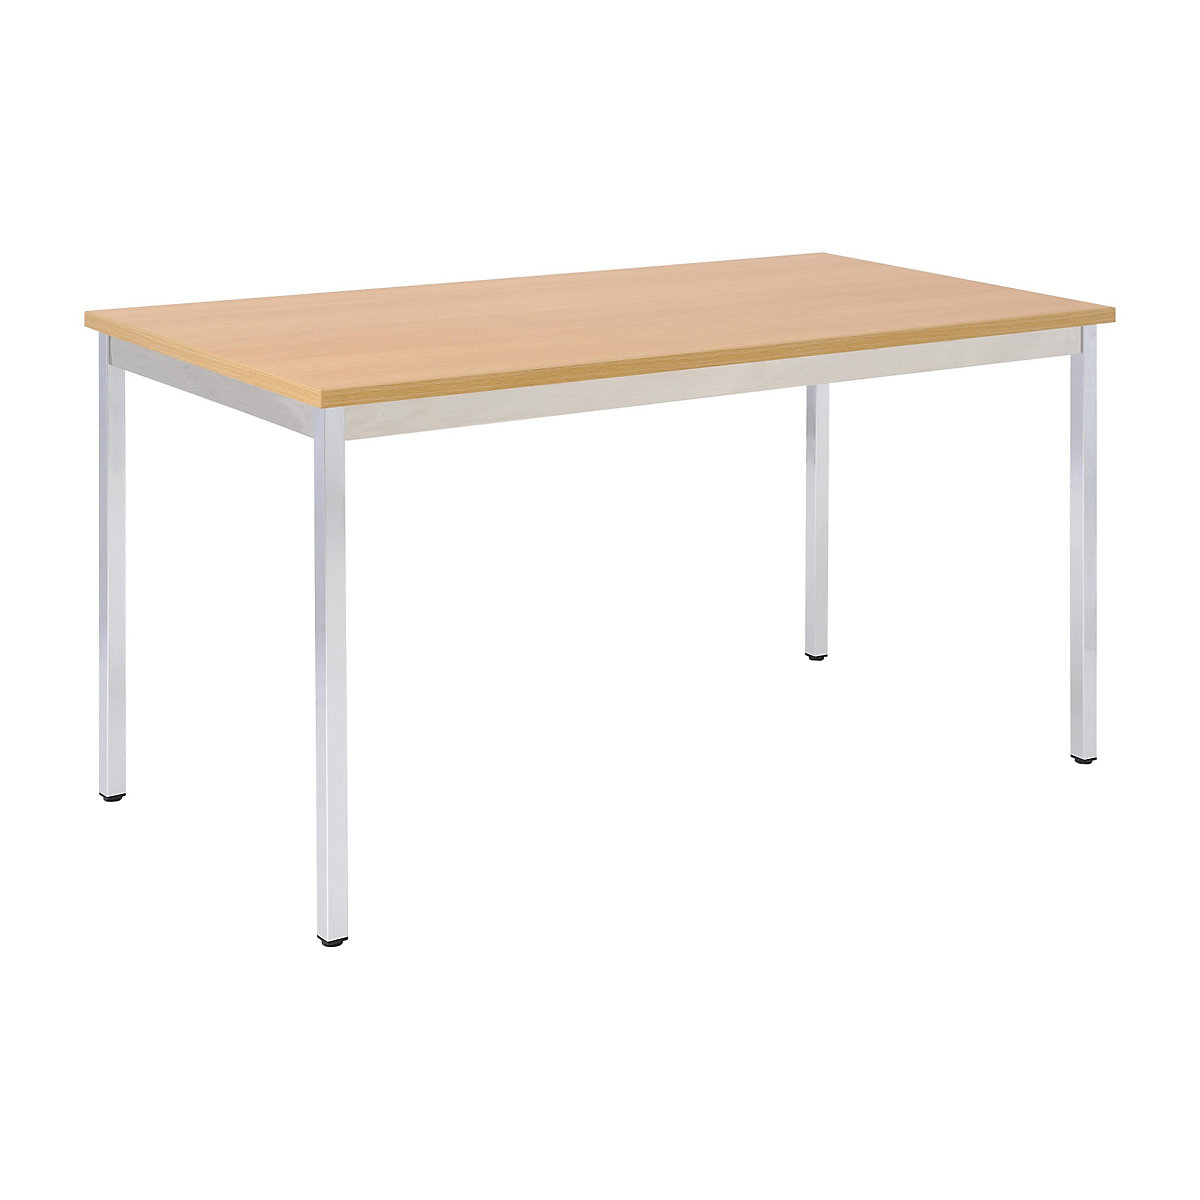 Víceúčelový stůl – eurokraft basic, obdélníkový tvar, v x š x h 740 x 1800 x 800 mm, deska v bukovém dekoru, podstavec pochromovaný-16